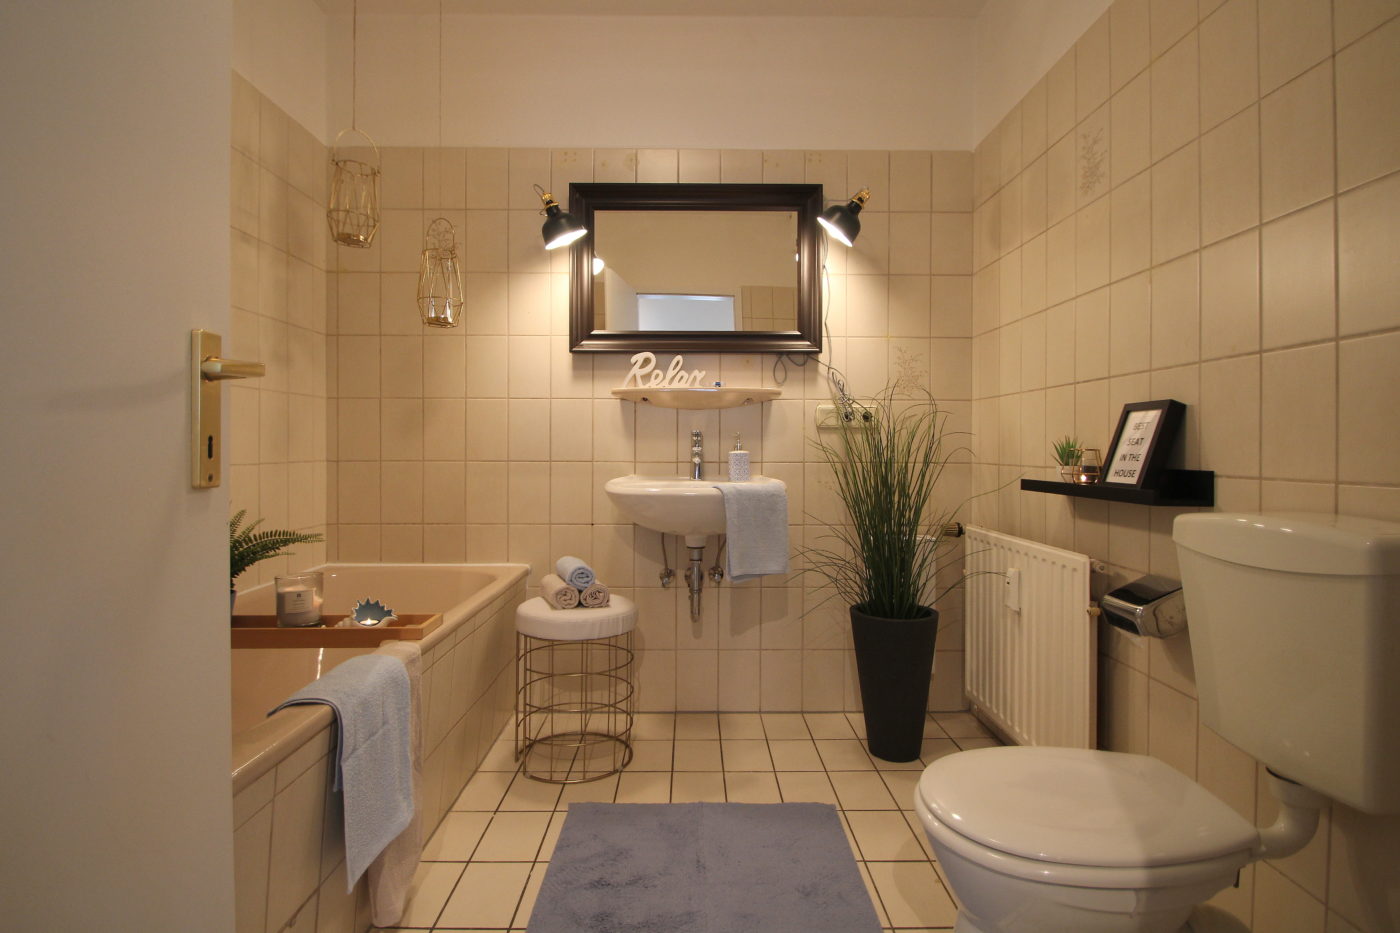 Badezimmer nach dem Homestaging durch Nicole Biernath von Blickfang Homestaging in Soest